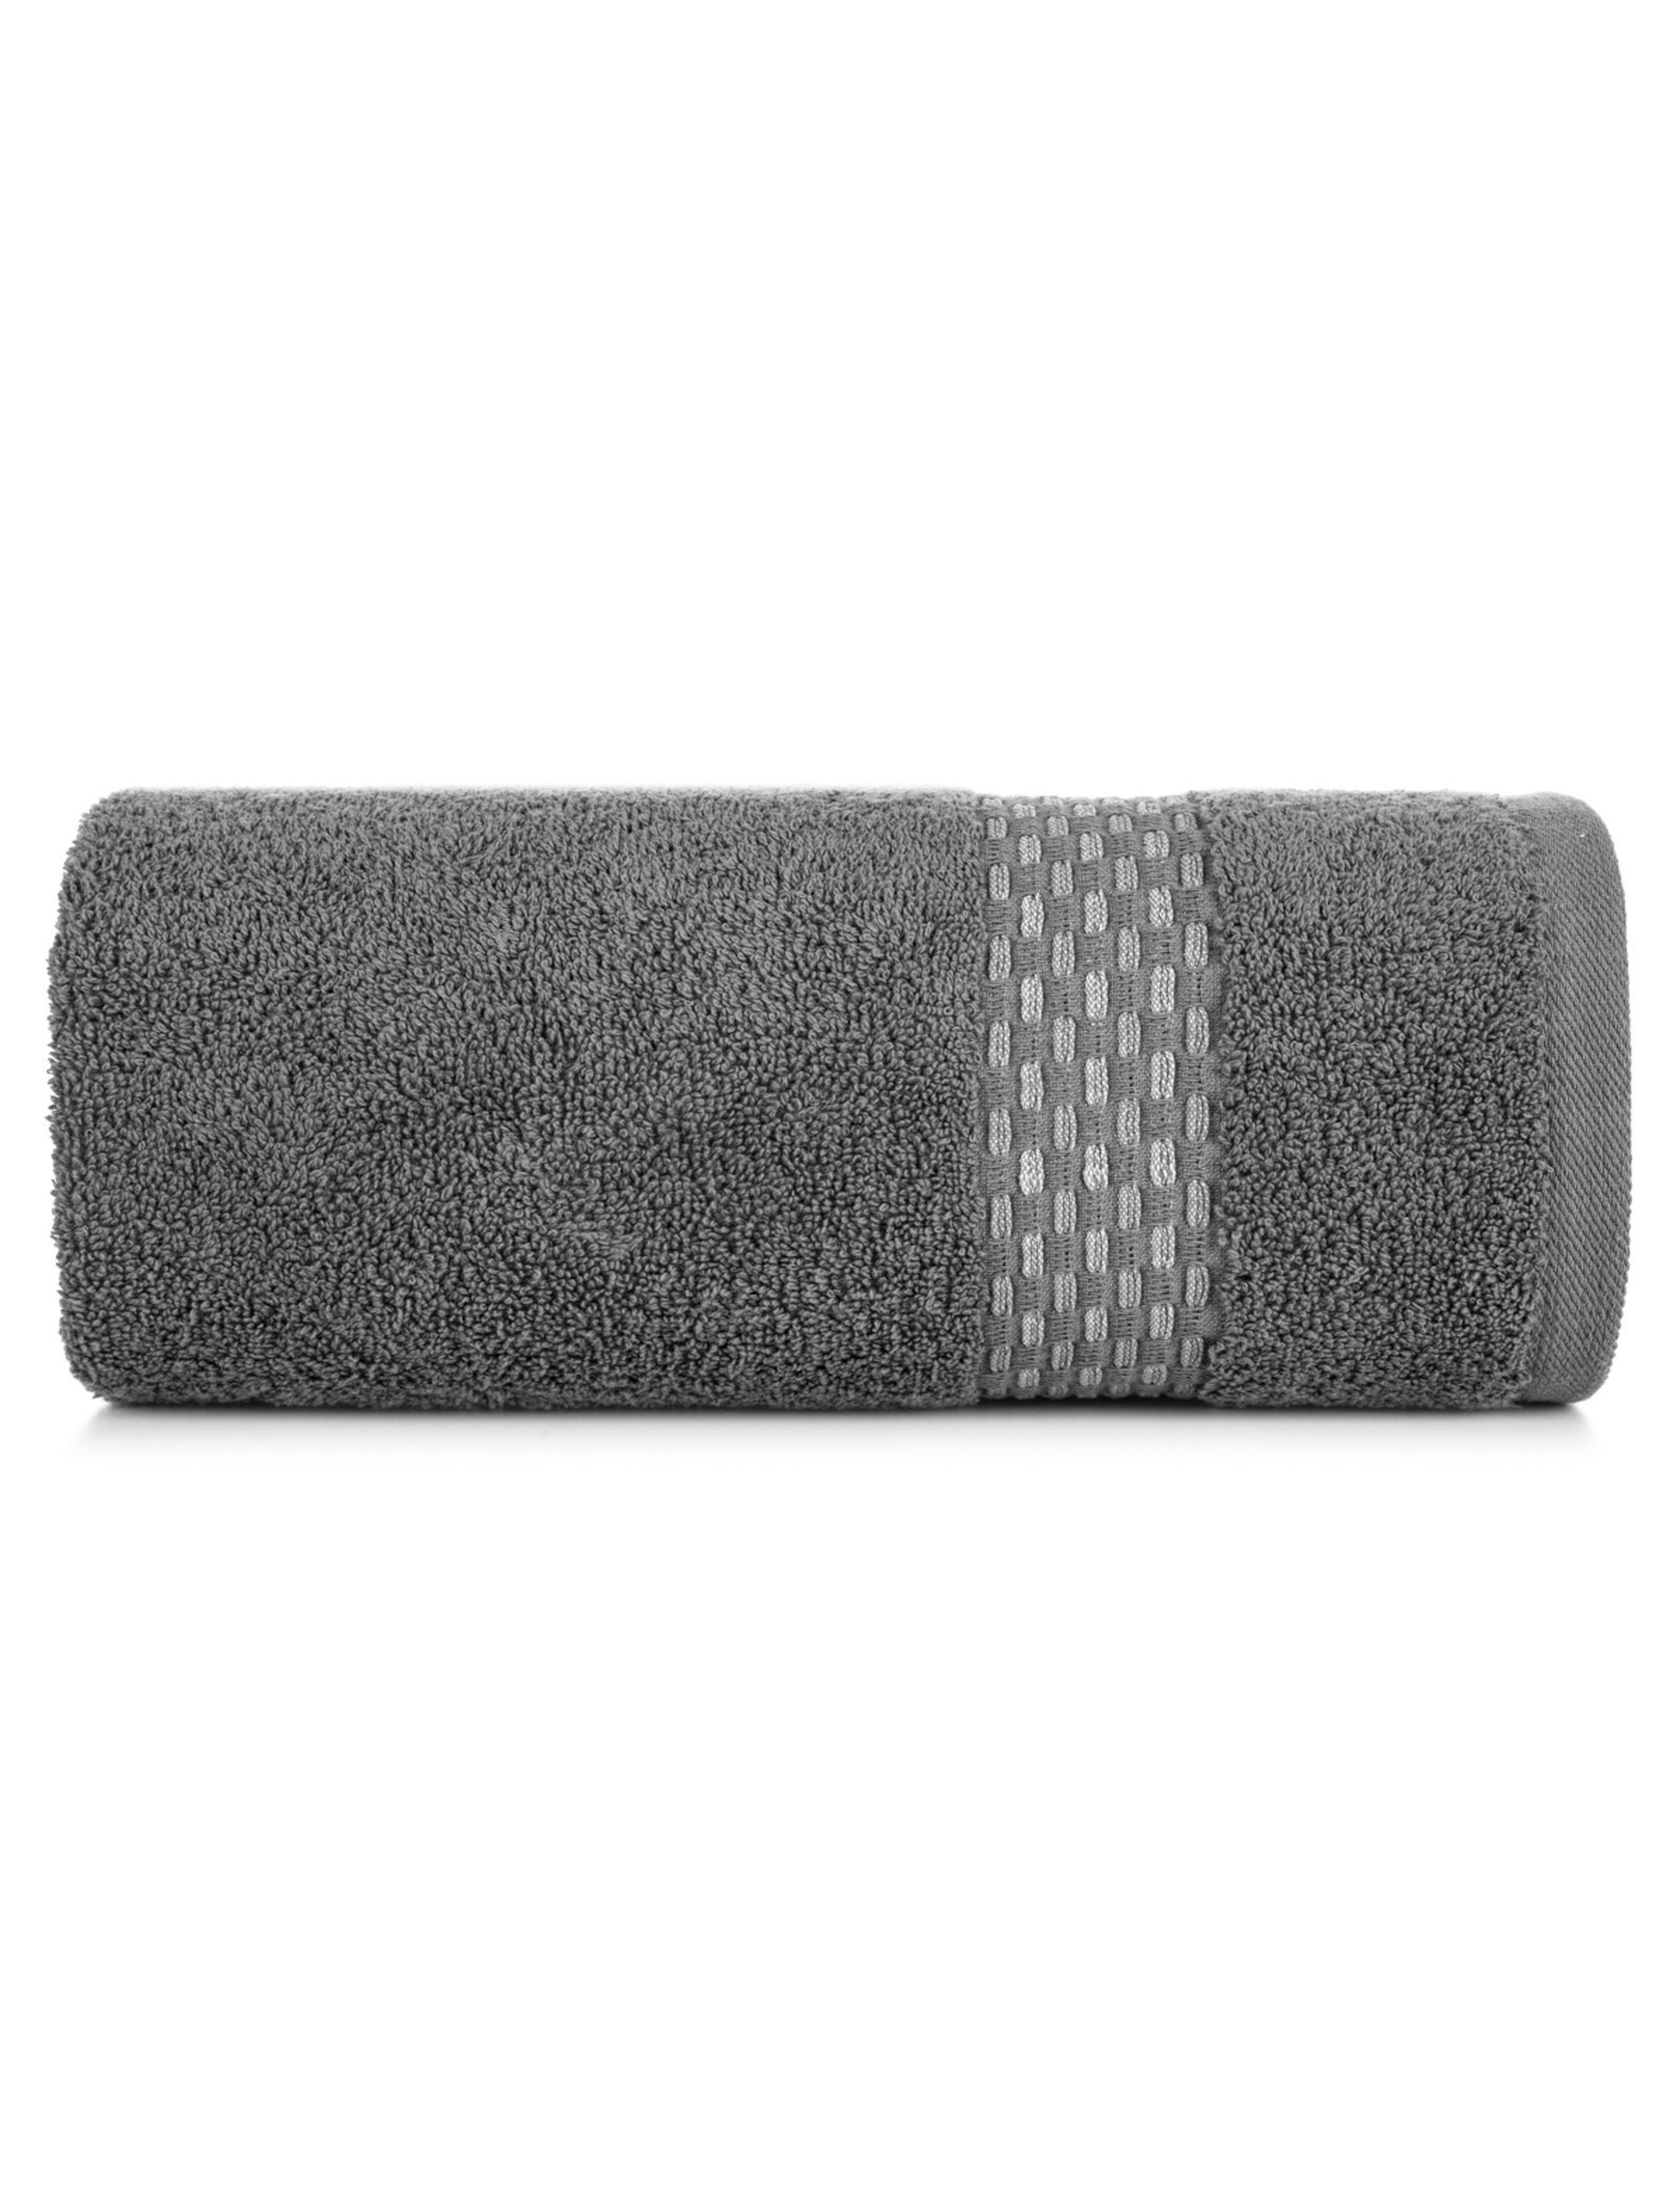 Szary ręcznik ze zdobieniami 70x140 cm